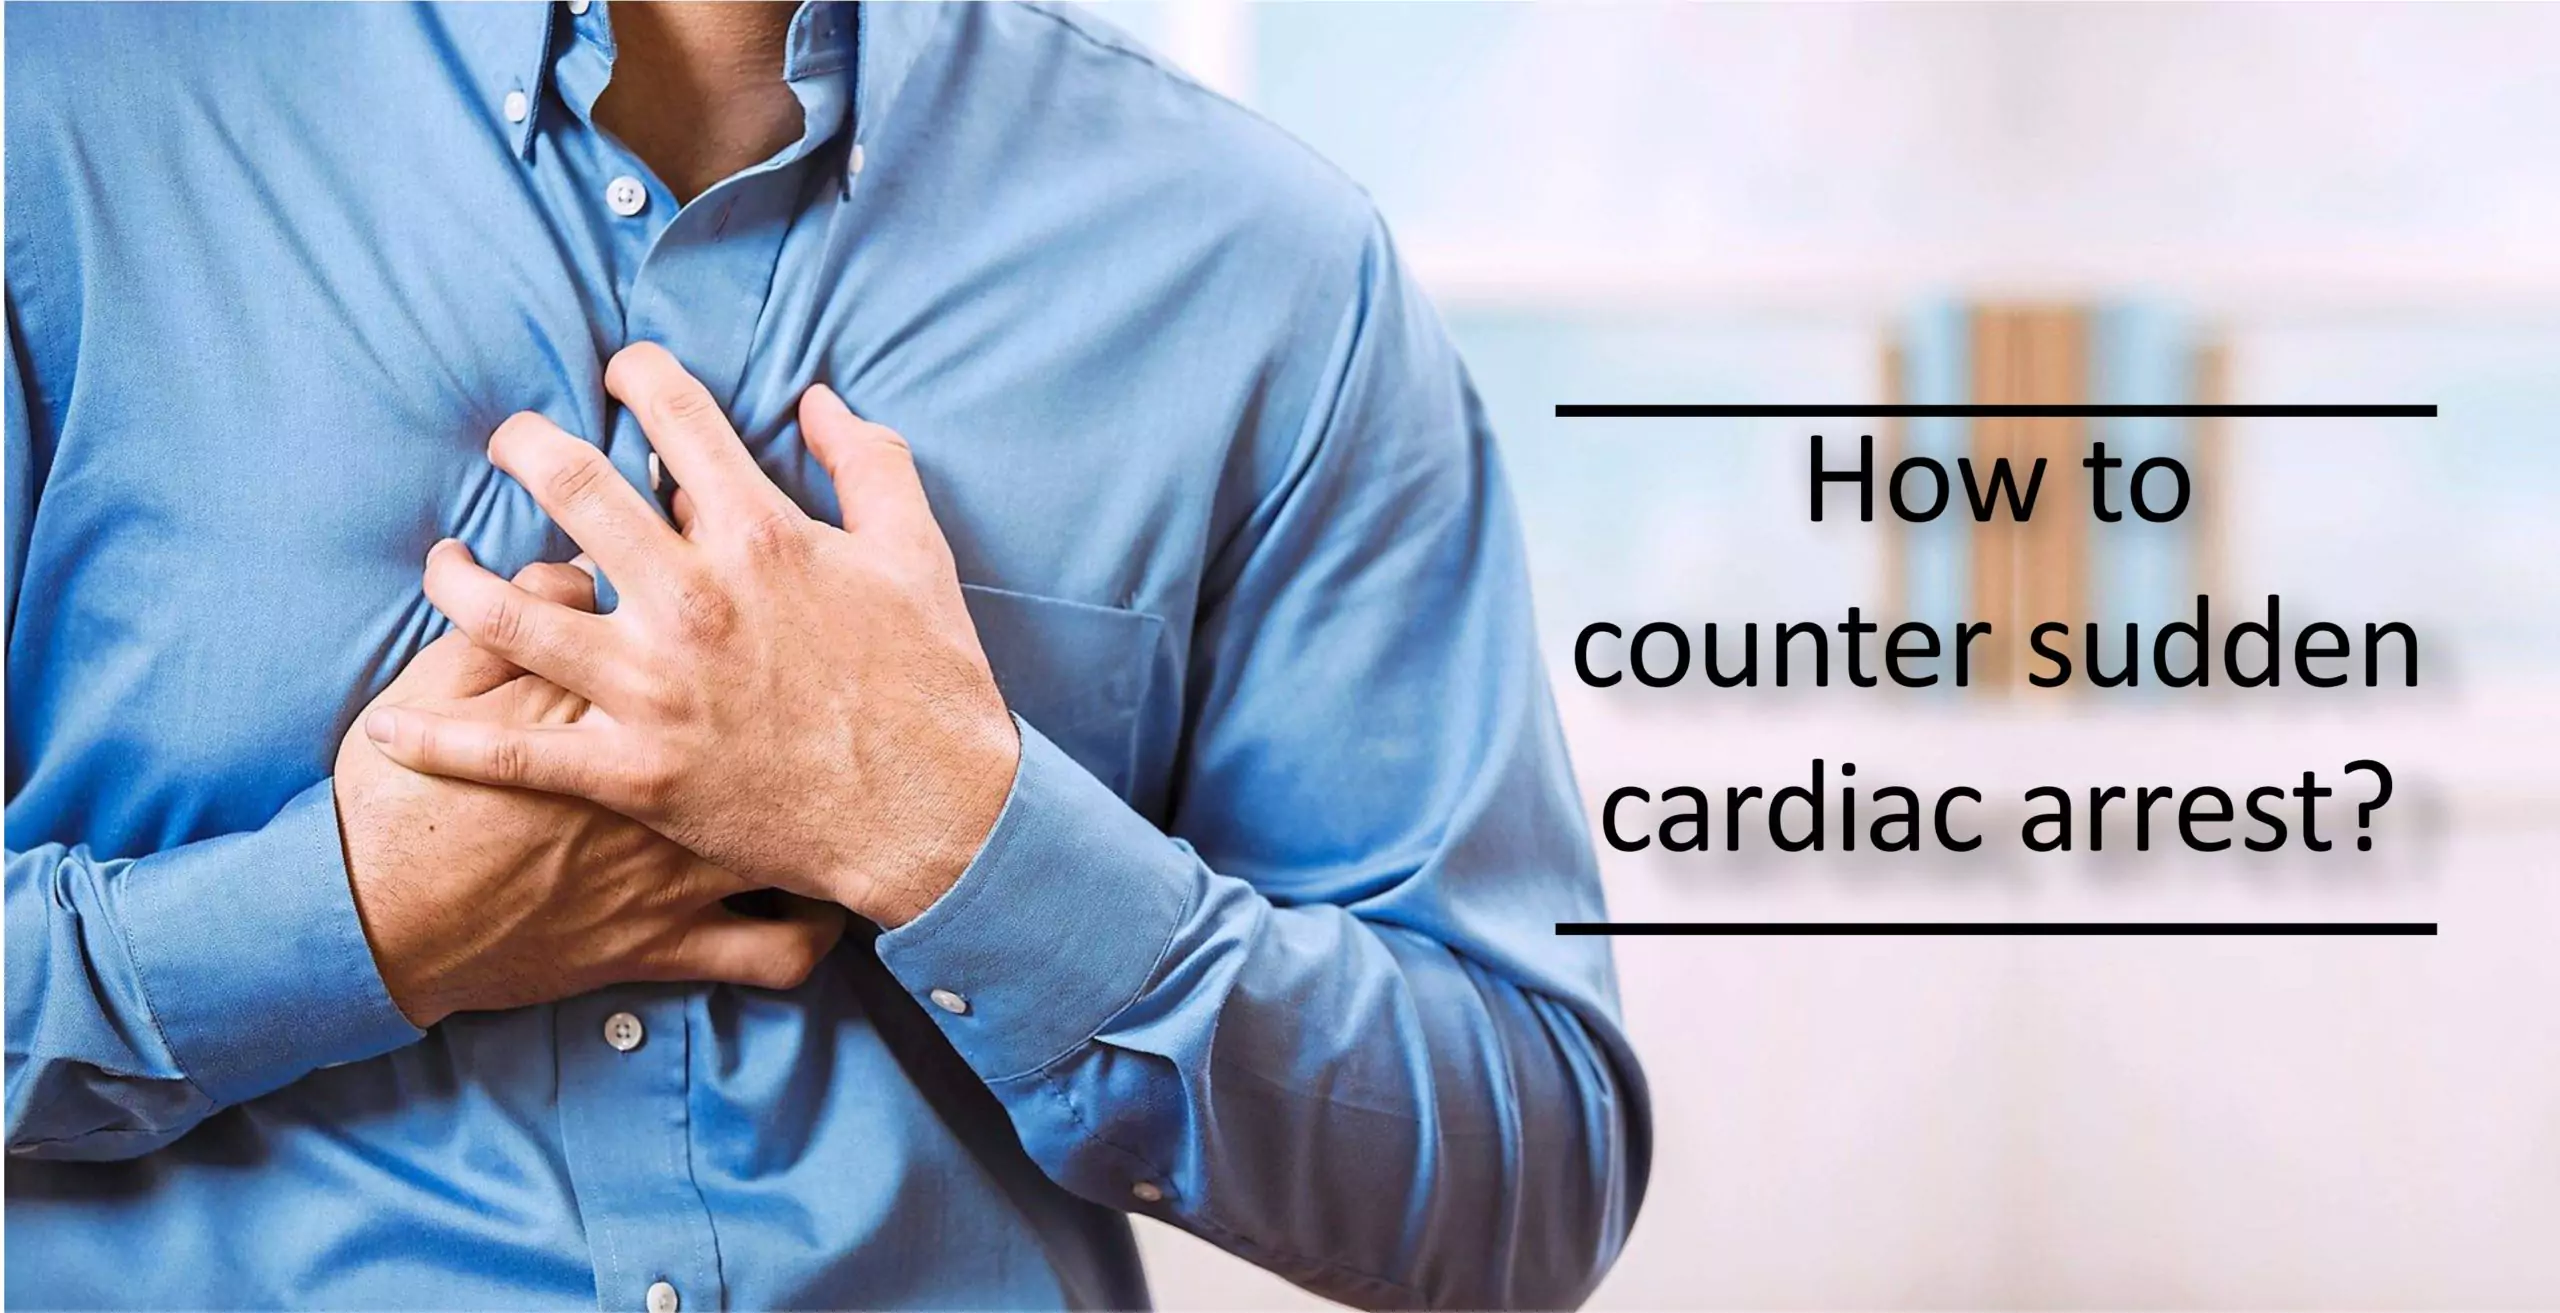 https://www.miracleshealth.com/assets/blog/assets/uploads/blog/How-to-counter-sudden-cardiac-arrest